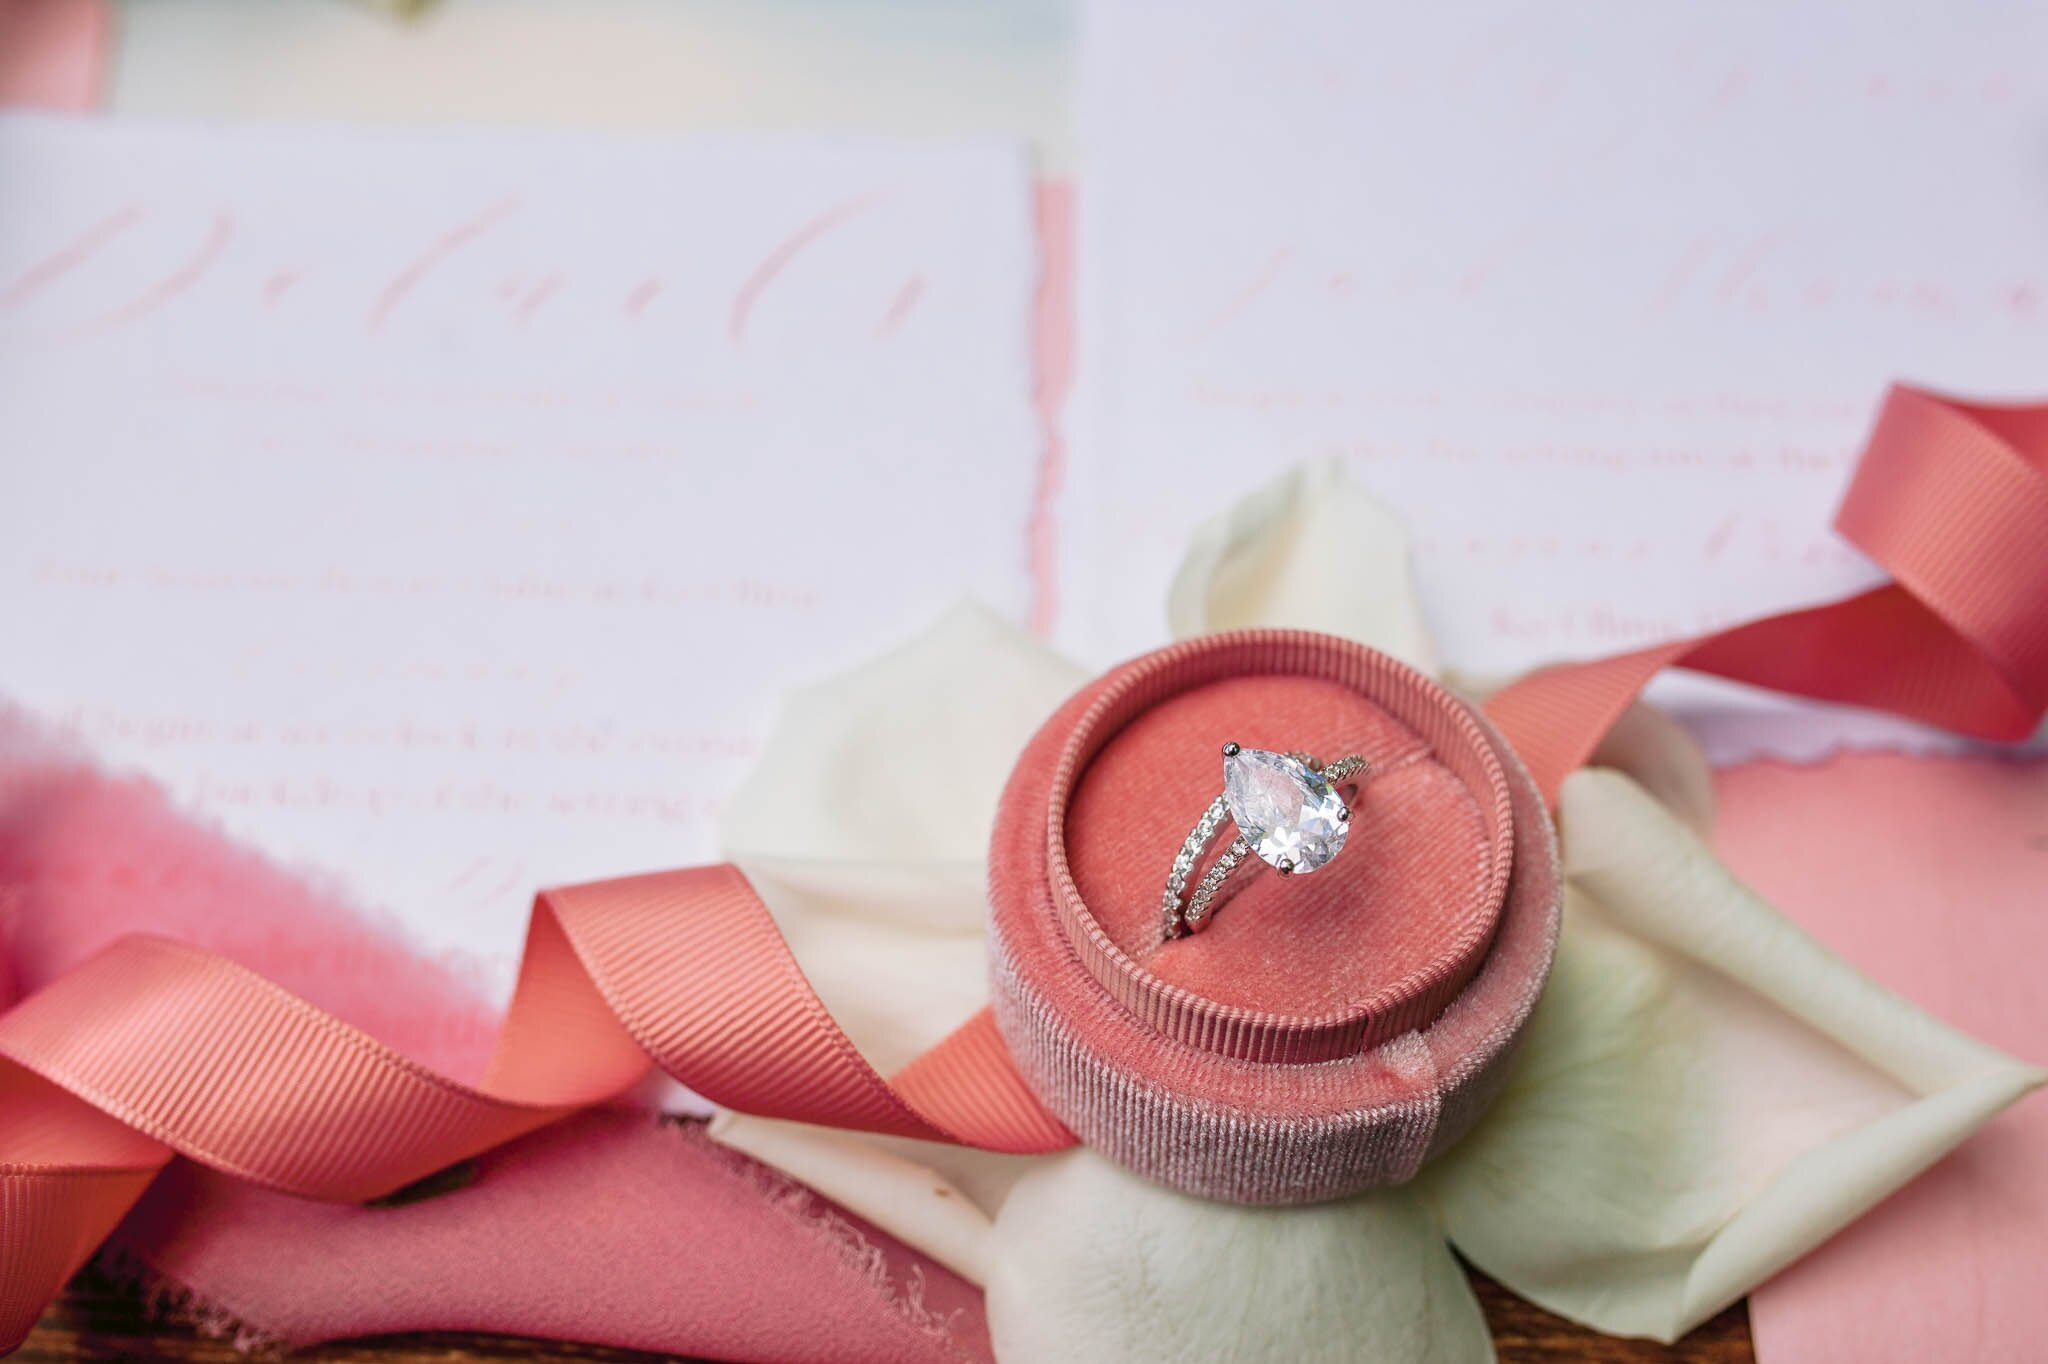 Pink and Blush Wedding Invitation - Engagement Ring - Details -  Four Seasons Oahu at Ko Olina Wedding Inspiration - Kapolei, Hawaii Photographer 